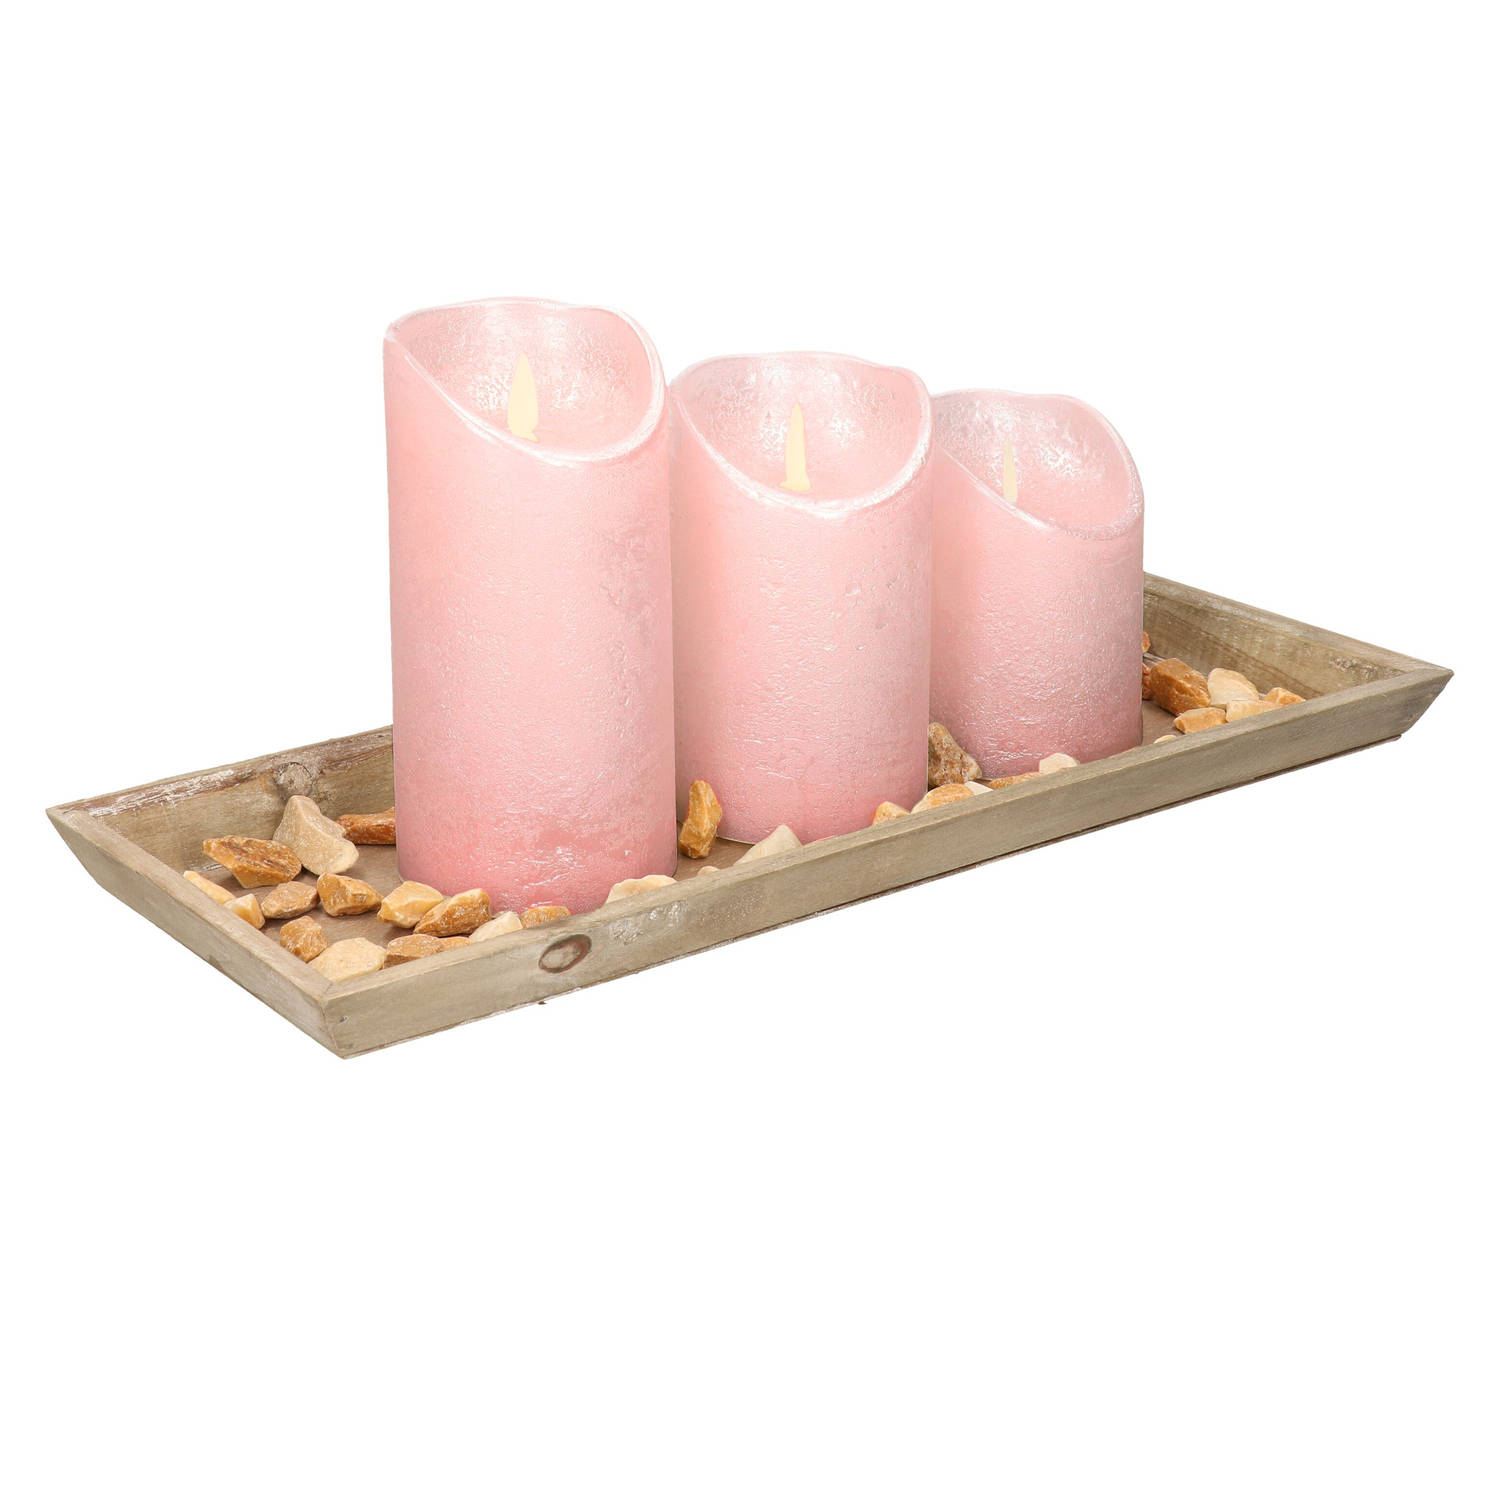 Houten Dienblad Met Steentjes En 3 Led Kaarsen In Het Lichtroze 39 X 15 Cm Led Kaarsen